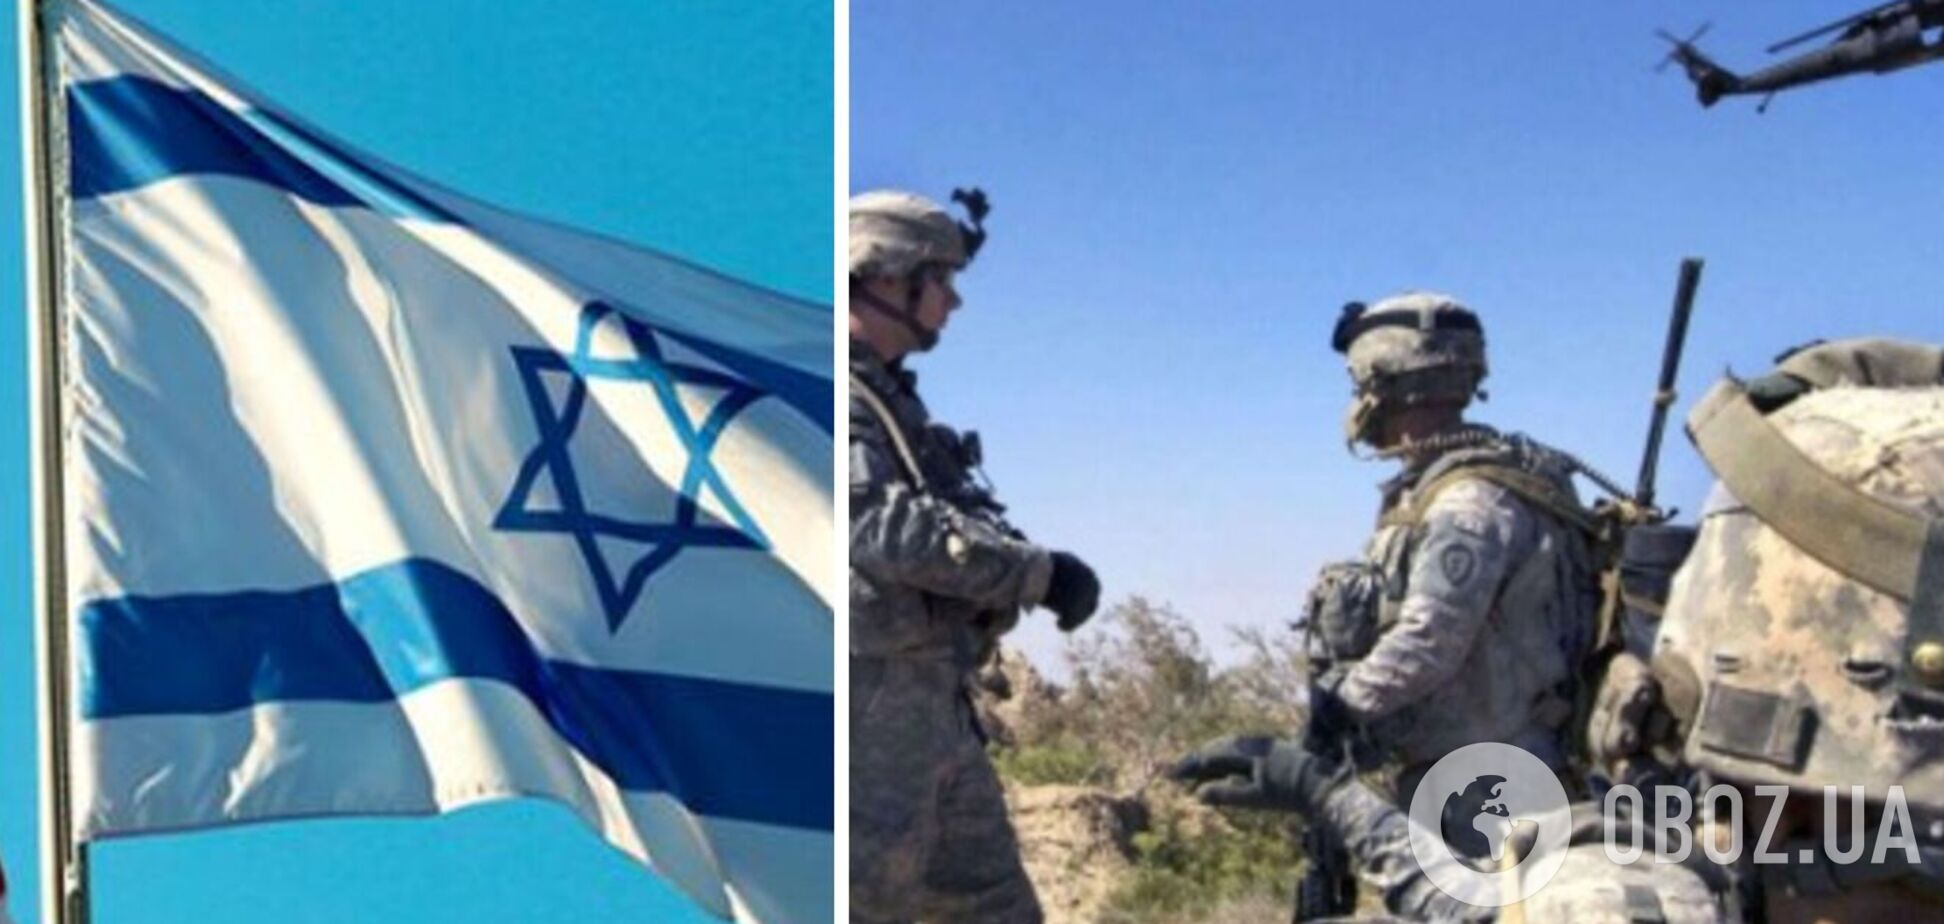 Ізраїль допомагає Україні набагато більше, ніж відомо, – посол в Німеччині 